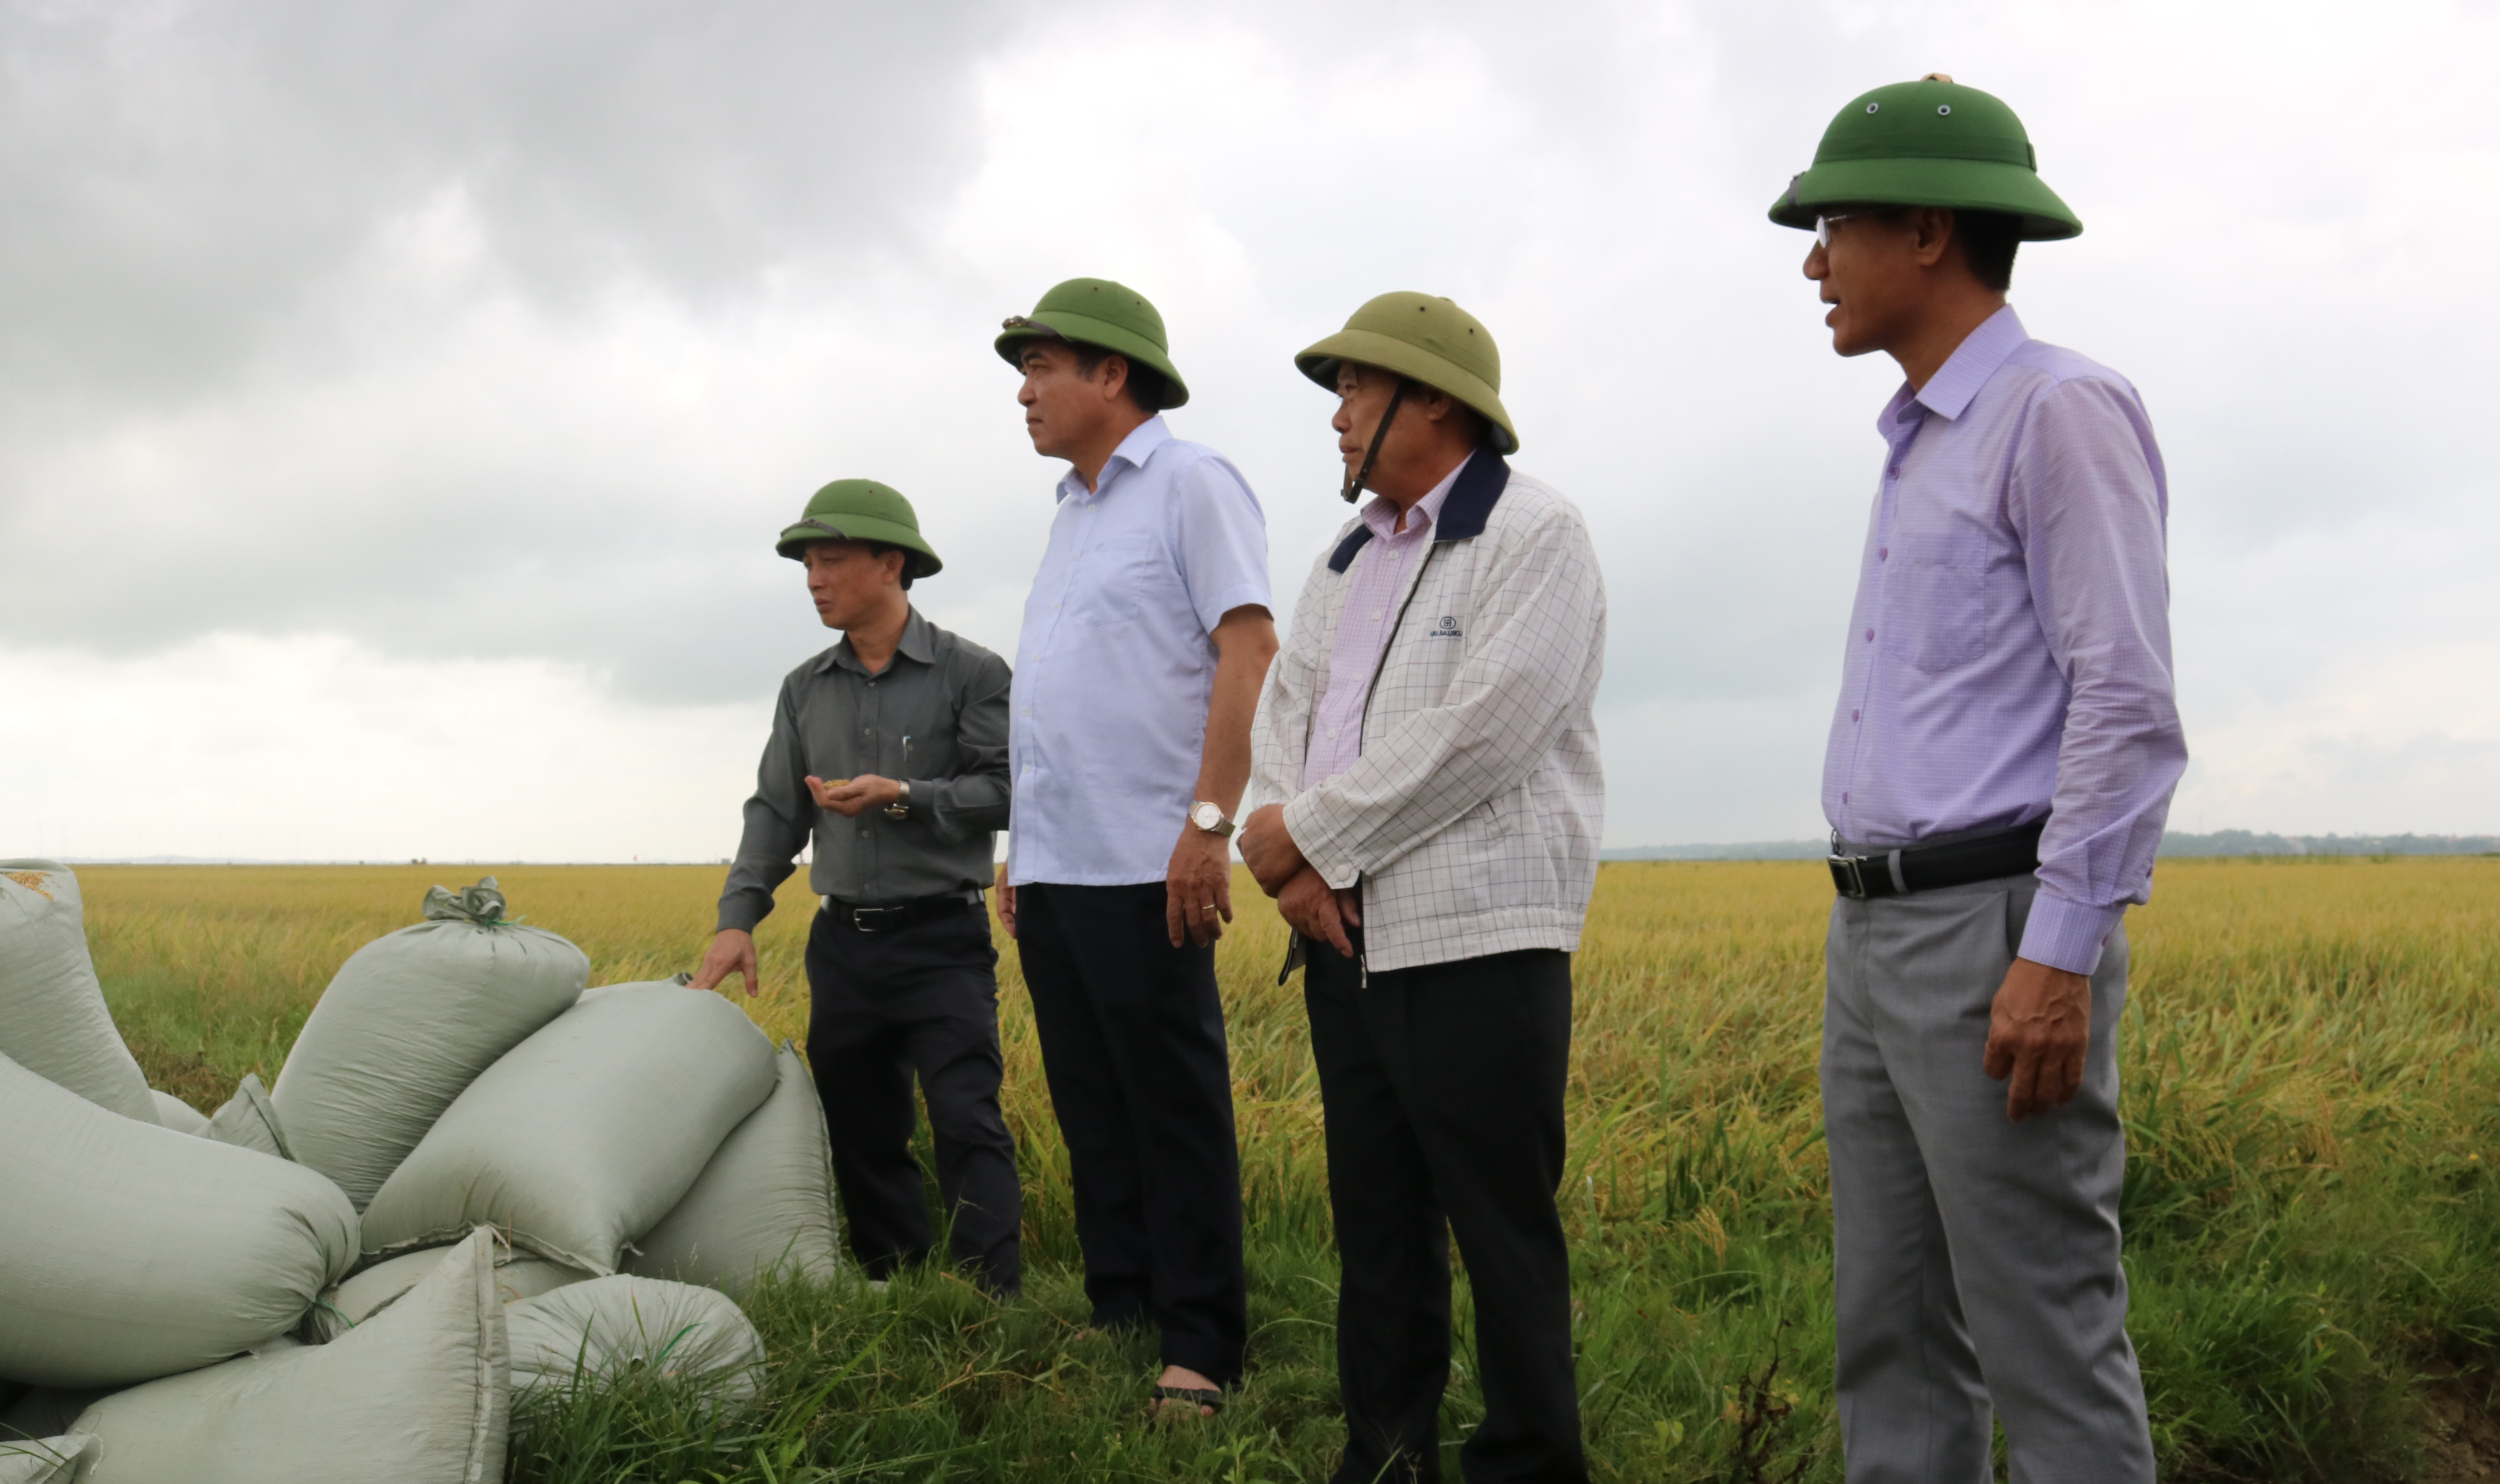  Đồng chí Phó Chủ tịch Thường trực UBND tỉnh Đoàn Ngọc Lâm kiểm tra tiến độ thu hoạch lúa đông-xuân tại thôn Thống Nhất, xã An Ninh (Quảng Ninh).